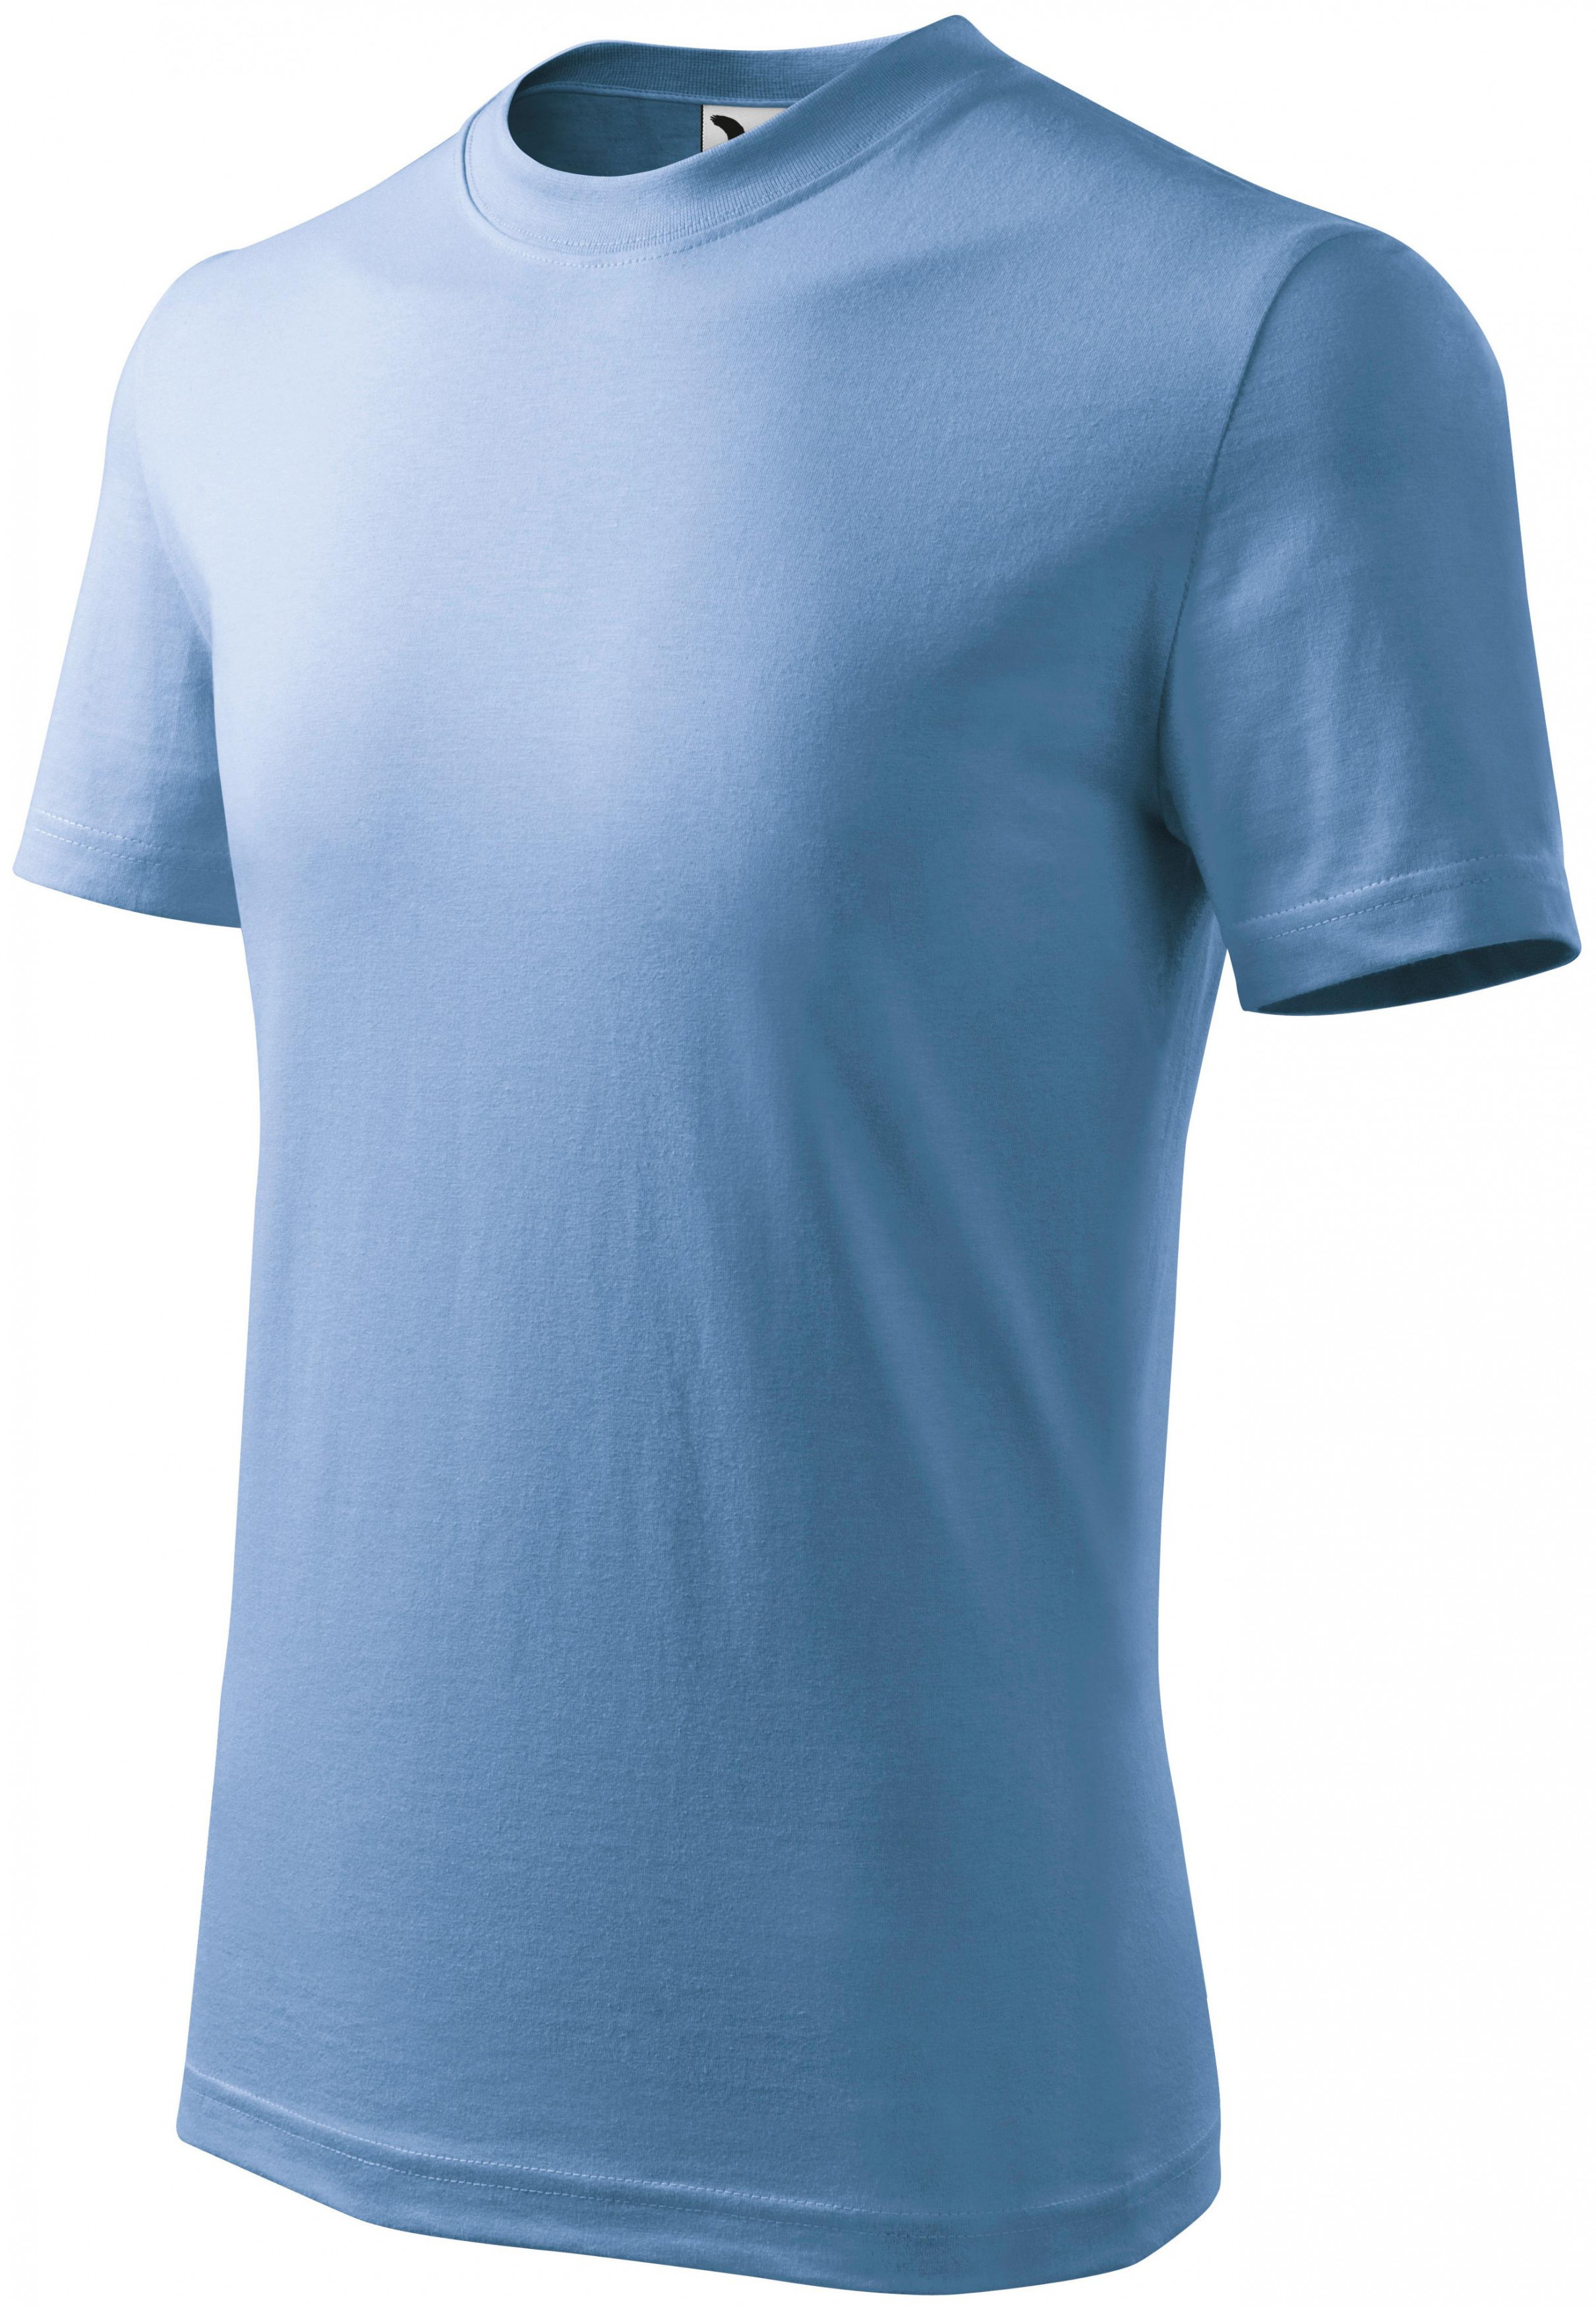 Detské tričko jednoduché, nebeská modrá, 146cm / 10rokov